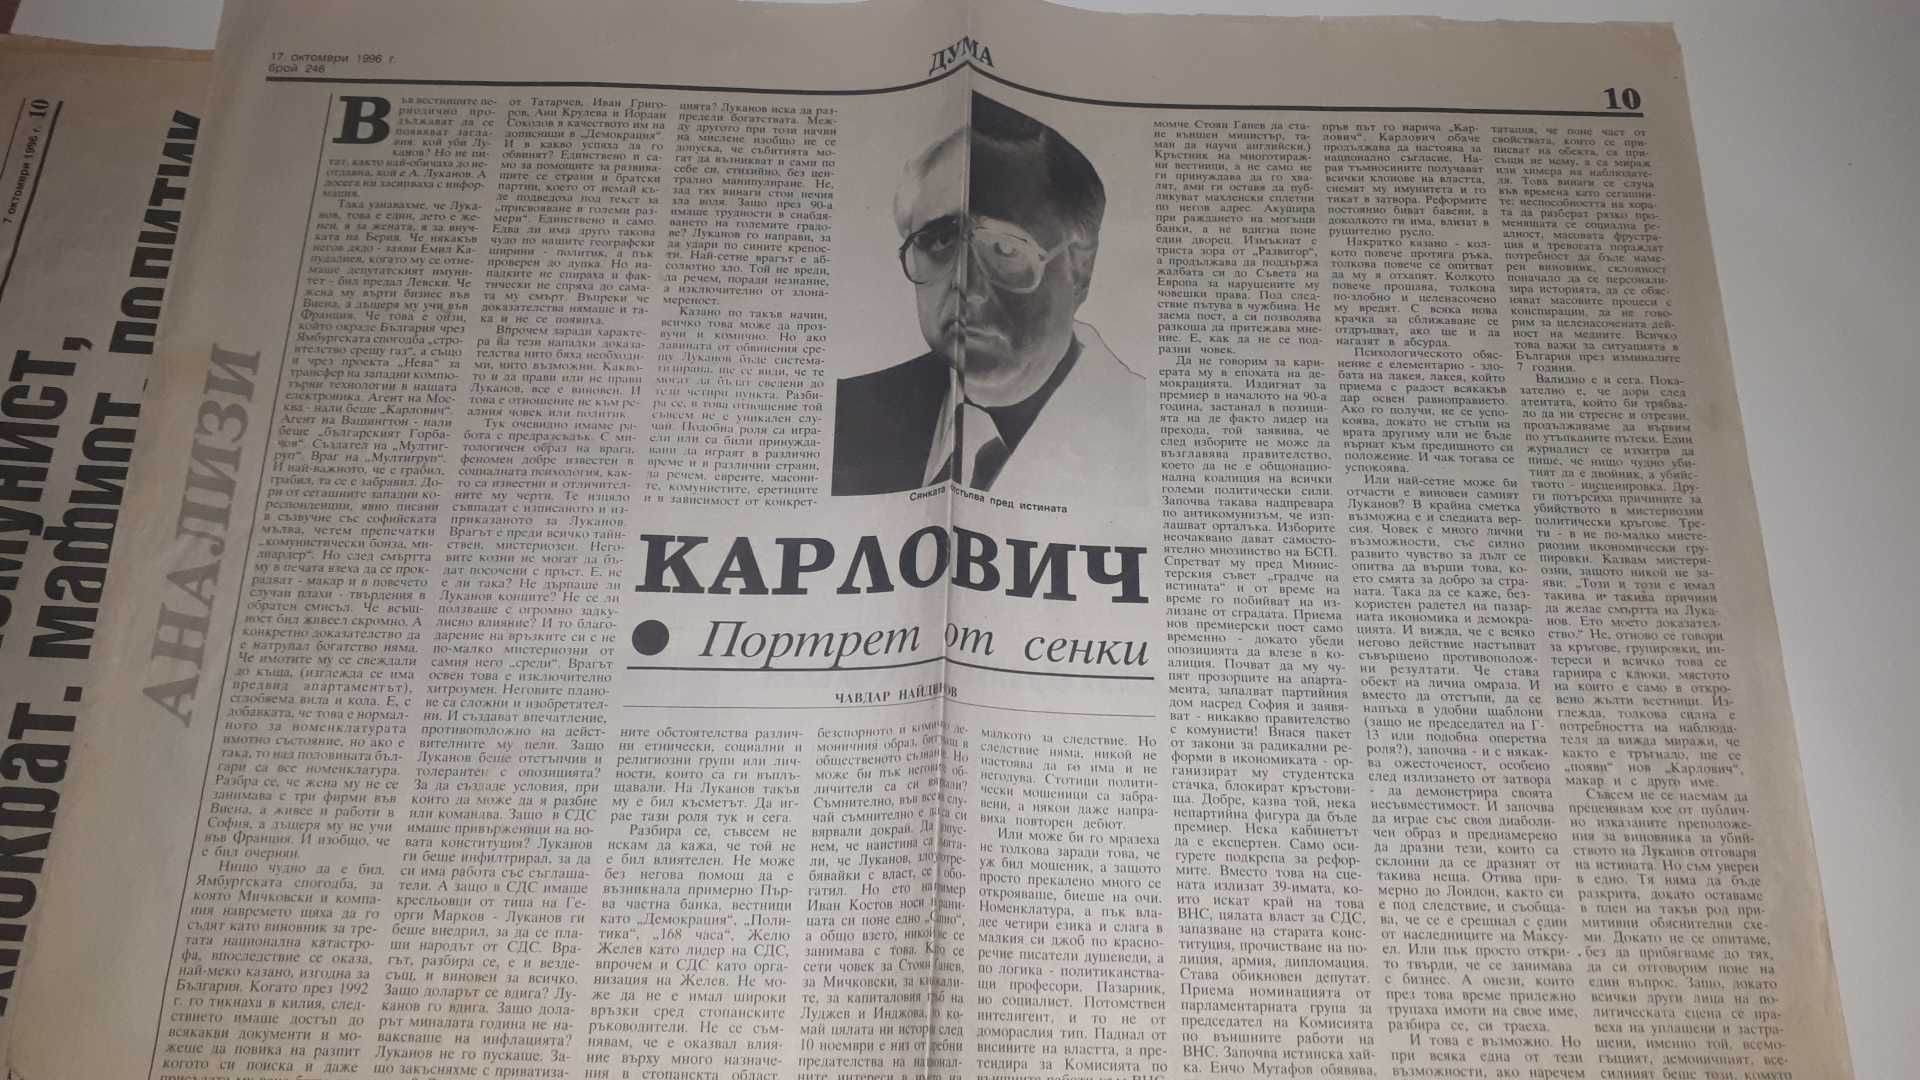 Списания и вестници за убийството на Луканов